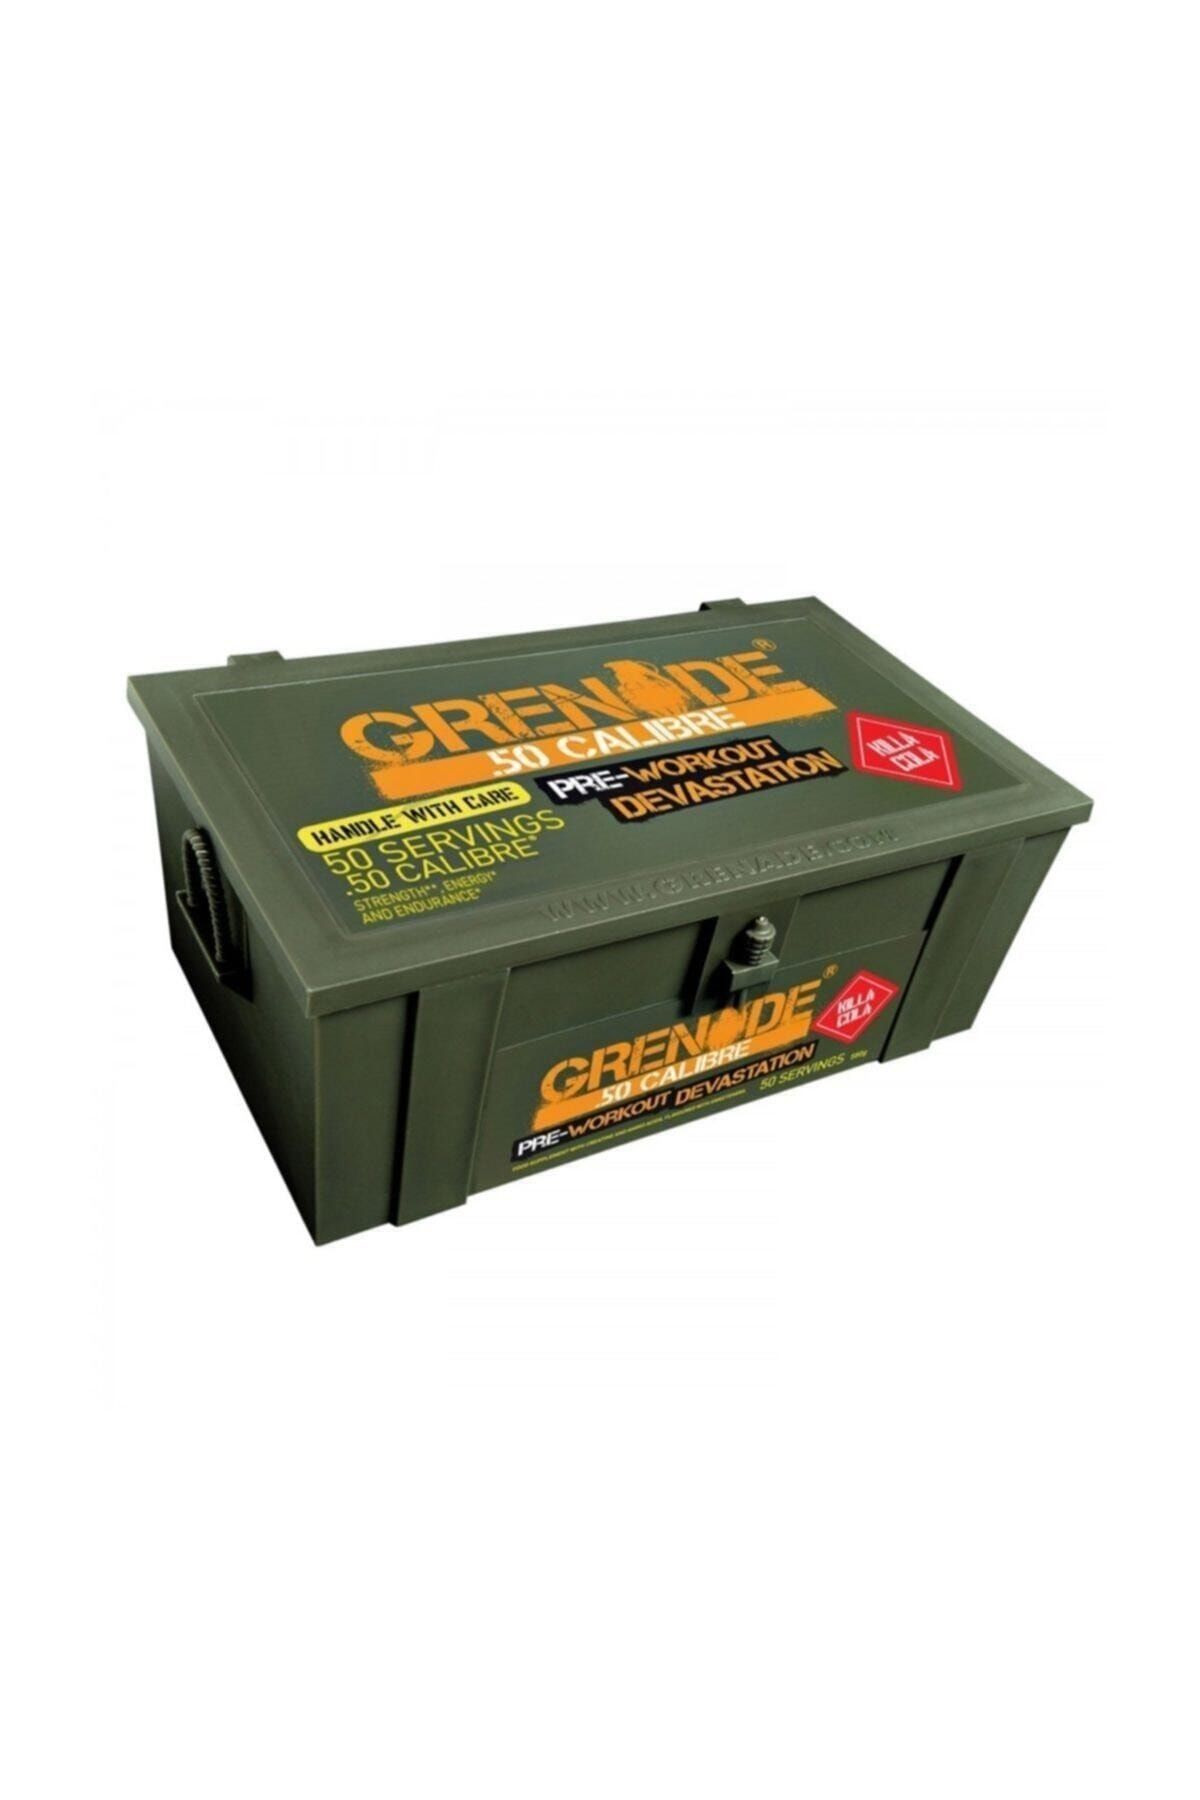 Grenade 50 Calibre 580 Gr Pre Workout - Kola Aroma -